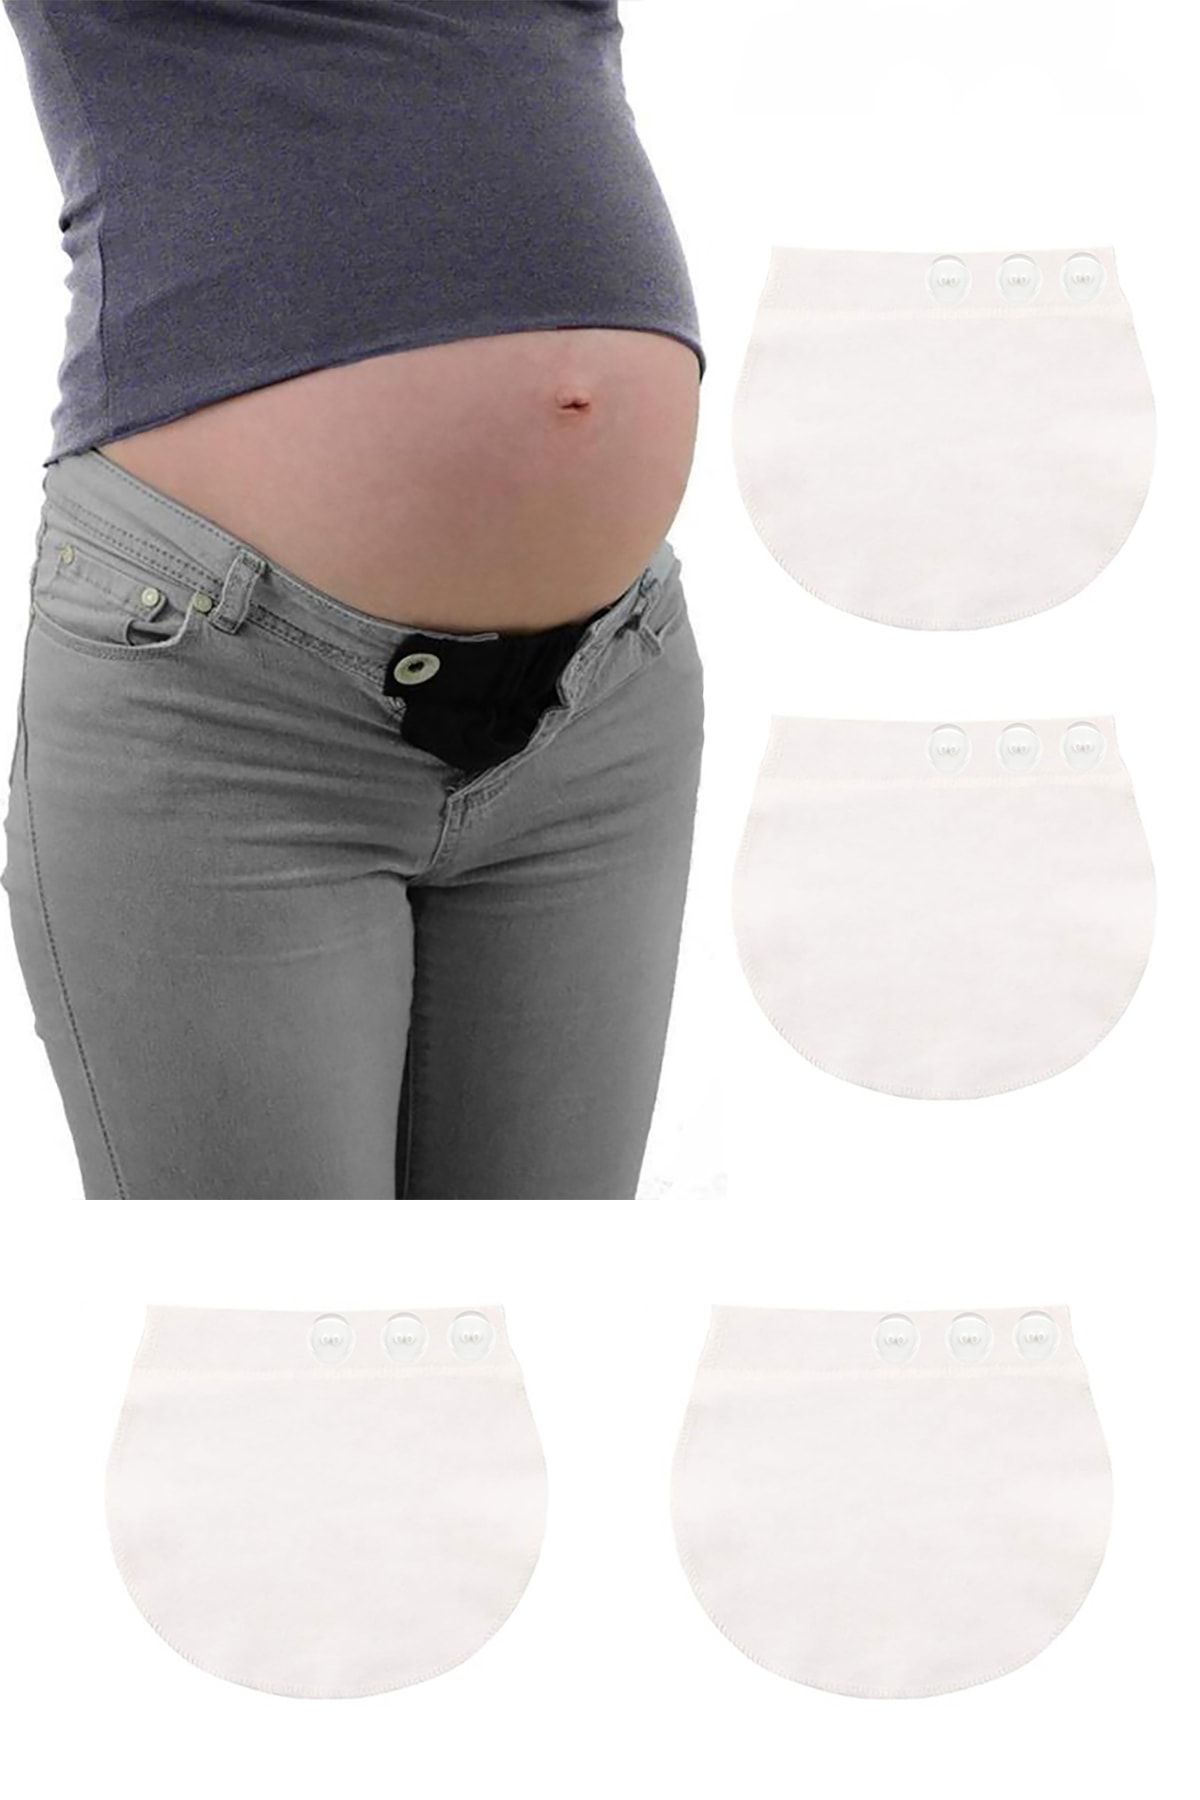 Pimobile Hamile Pantolonu Bel Genişletici-kadınlar Için Pantolon Genişletici Beyaz Renk 2 Adet